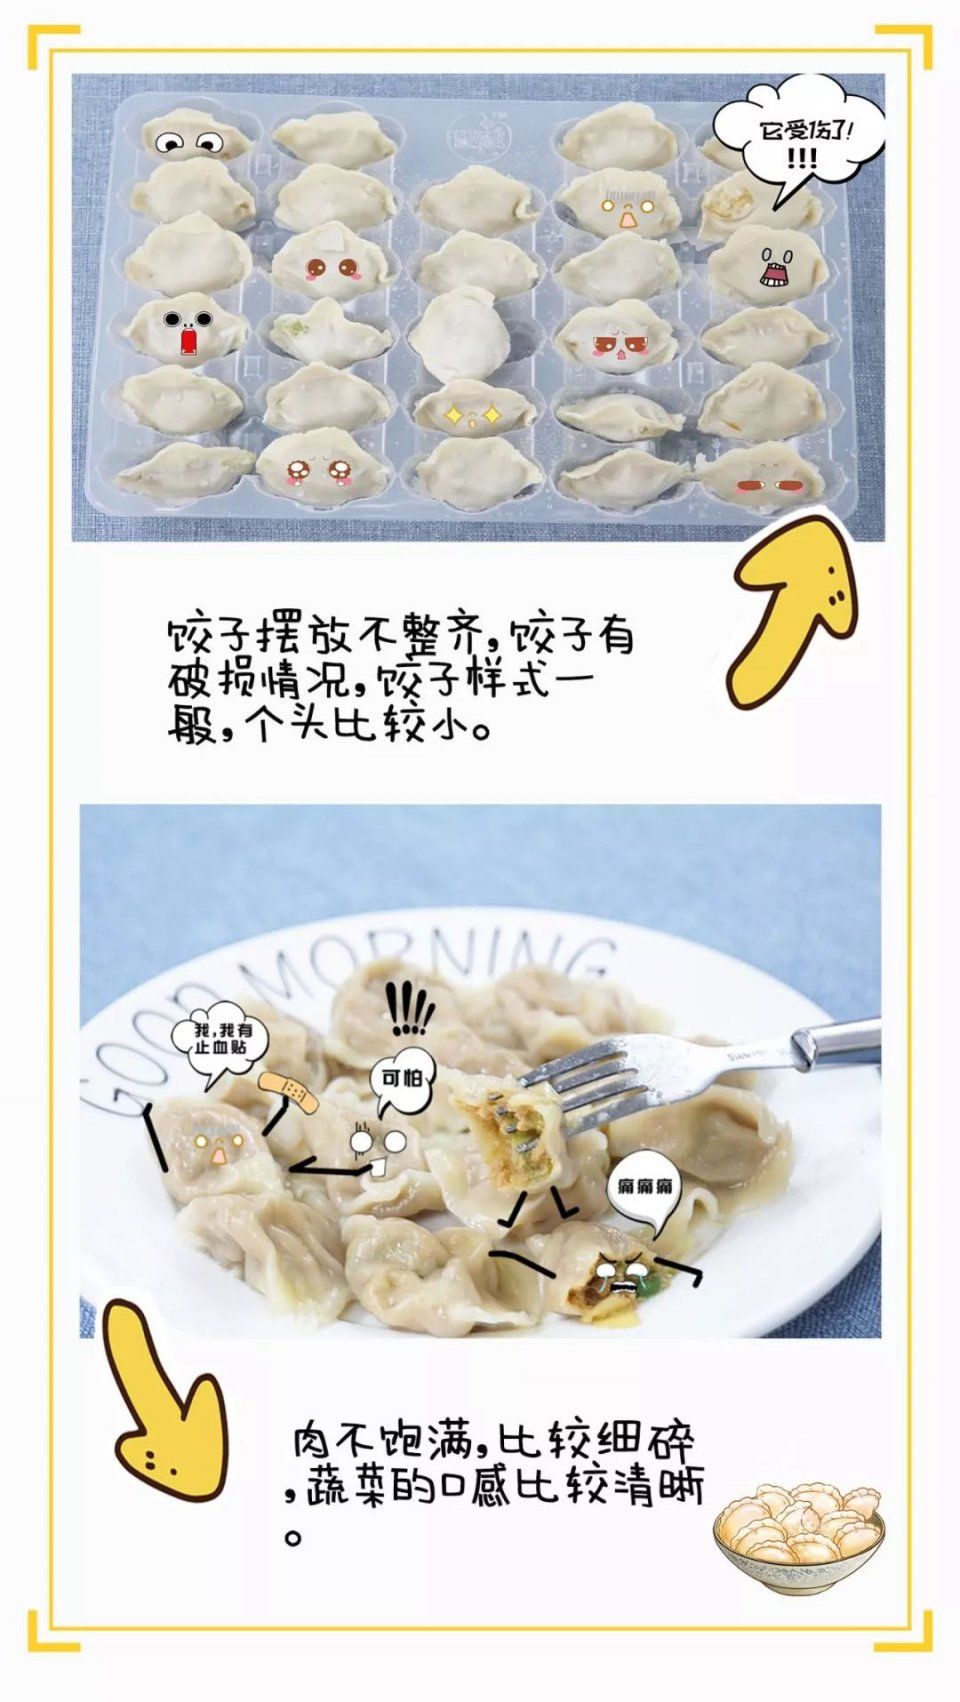 4大牌子速冻饺子测评,终于找到最好吃的那一个